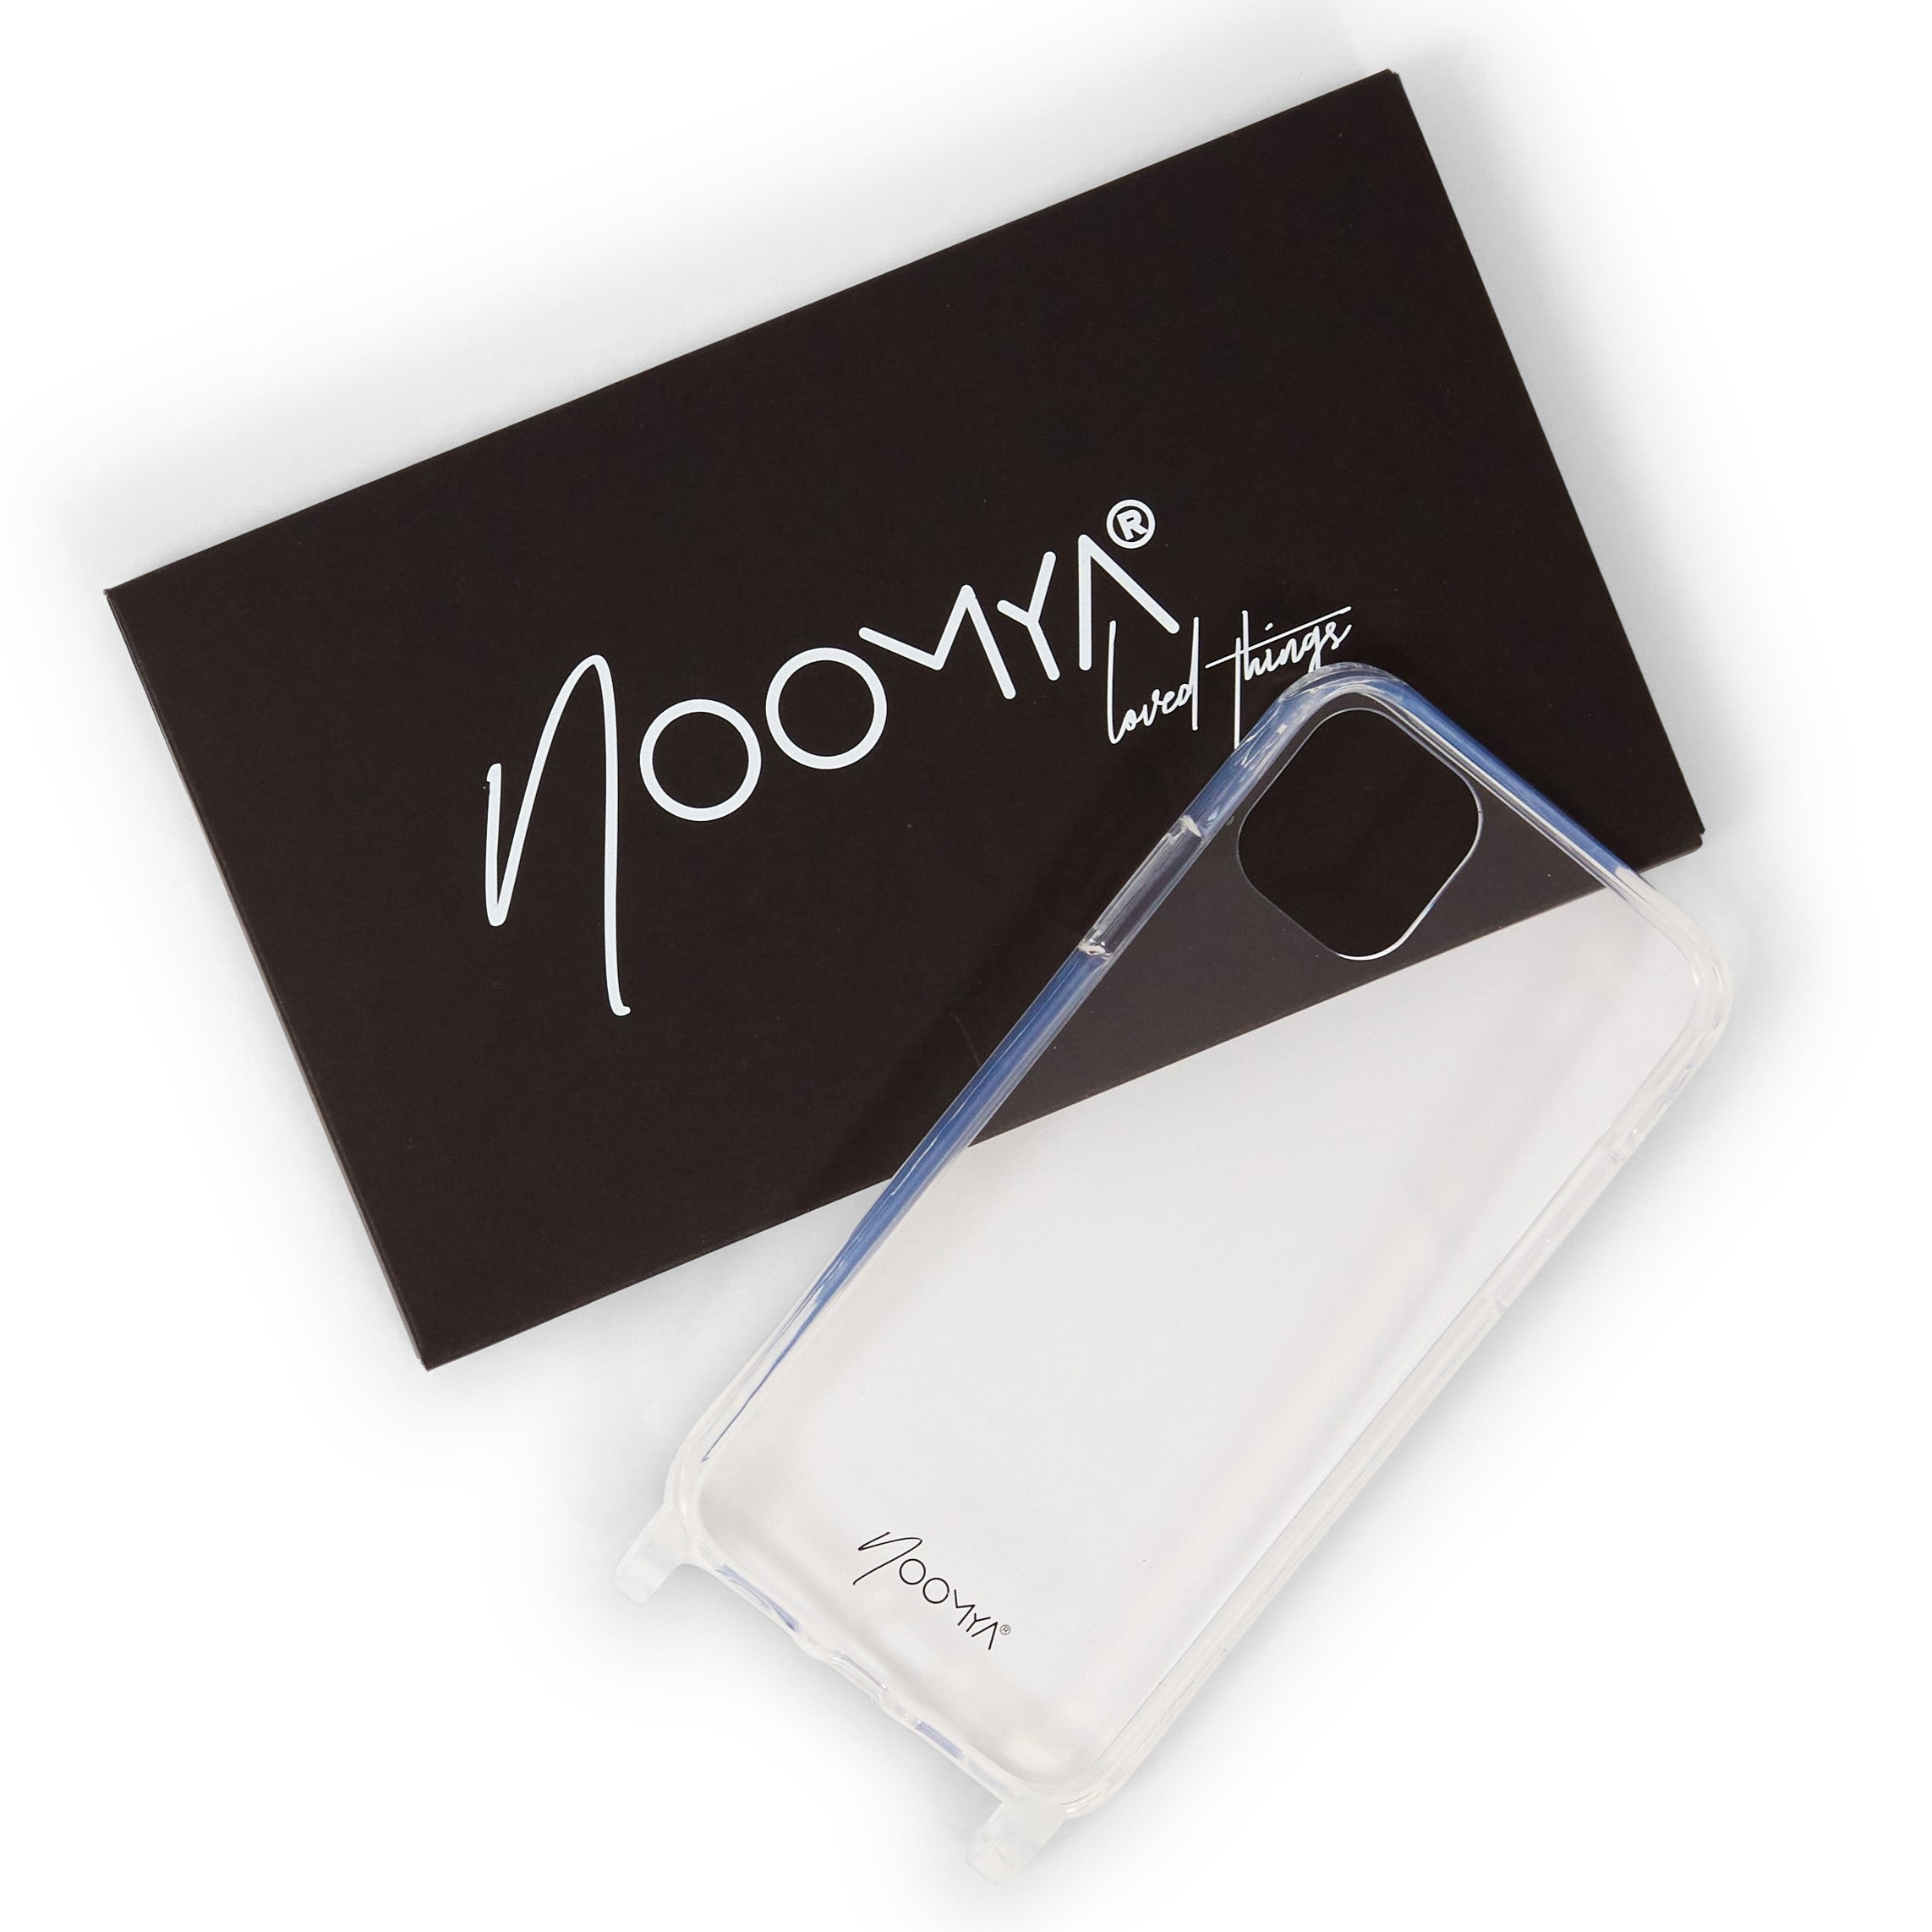 Handyhülle für iPhone 11 Pro MAX mit Ösen für Handyketten &amp; Handybänder | transparent